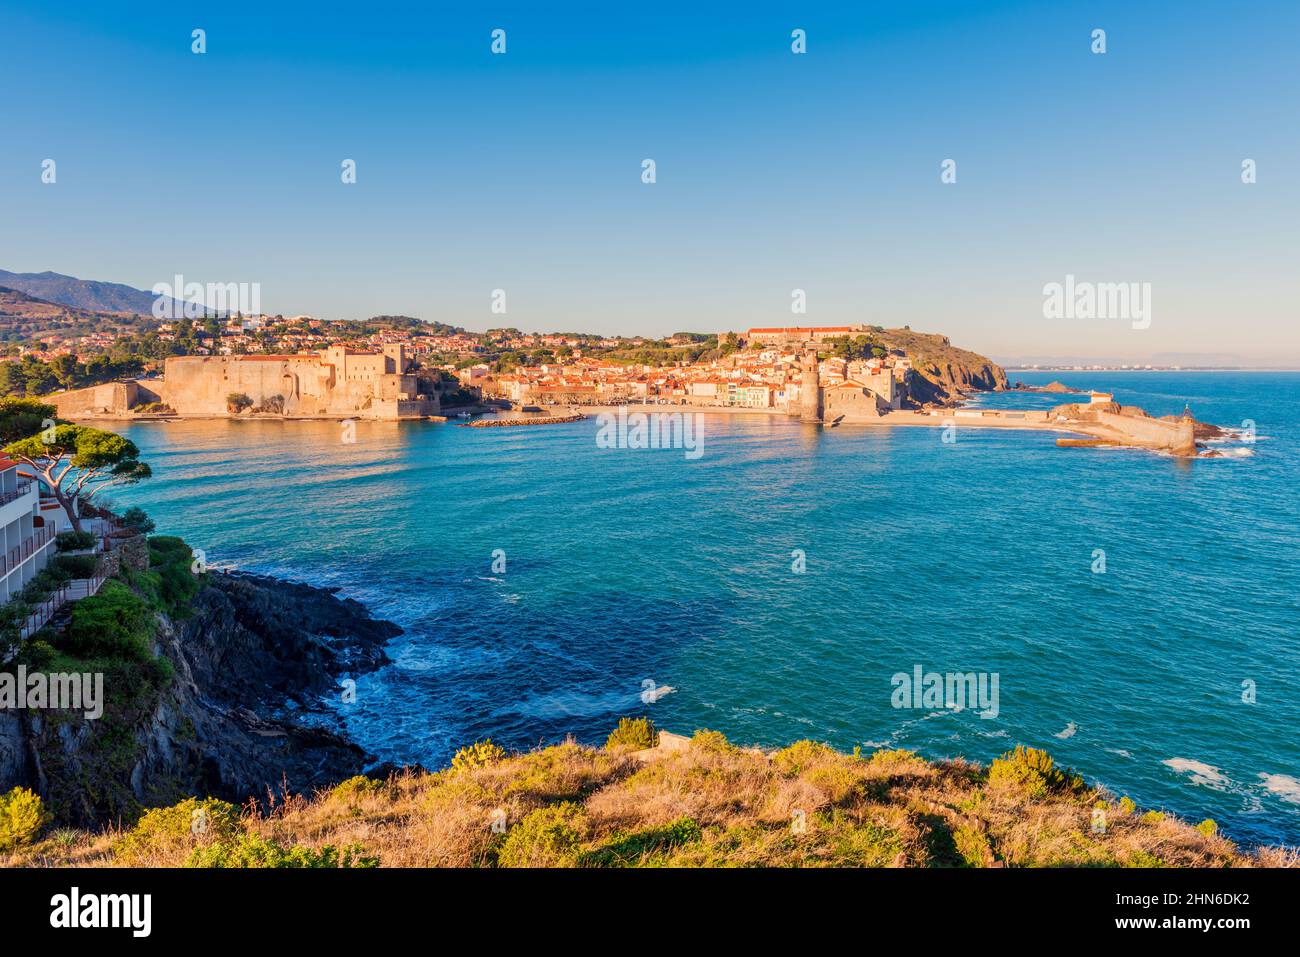 Vue panoramique sur Collioure, village côtier du sud-ouest de la France, près de la ville de Perpignan et près de la frontière avec l'Espagne Banque D'Images